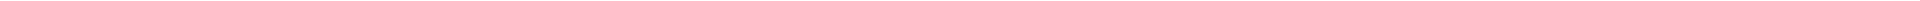 Элайнеры - цены на капы для выравнивания (исправления) прикуса, цены в Астане (Нур-Султан), Алматы, Атырау, Усть-Каменогорск, Уральск, Кокшетау в Казахстане, фото 20